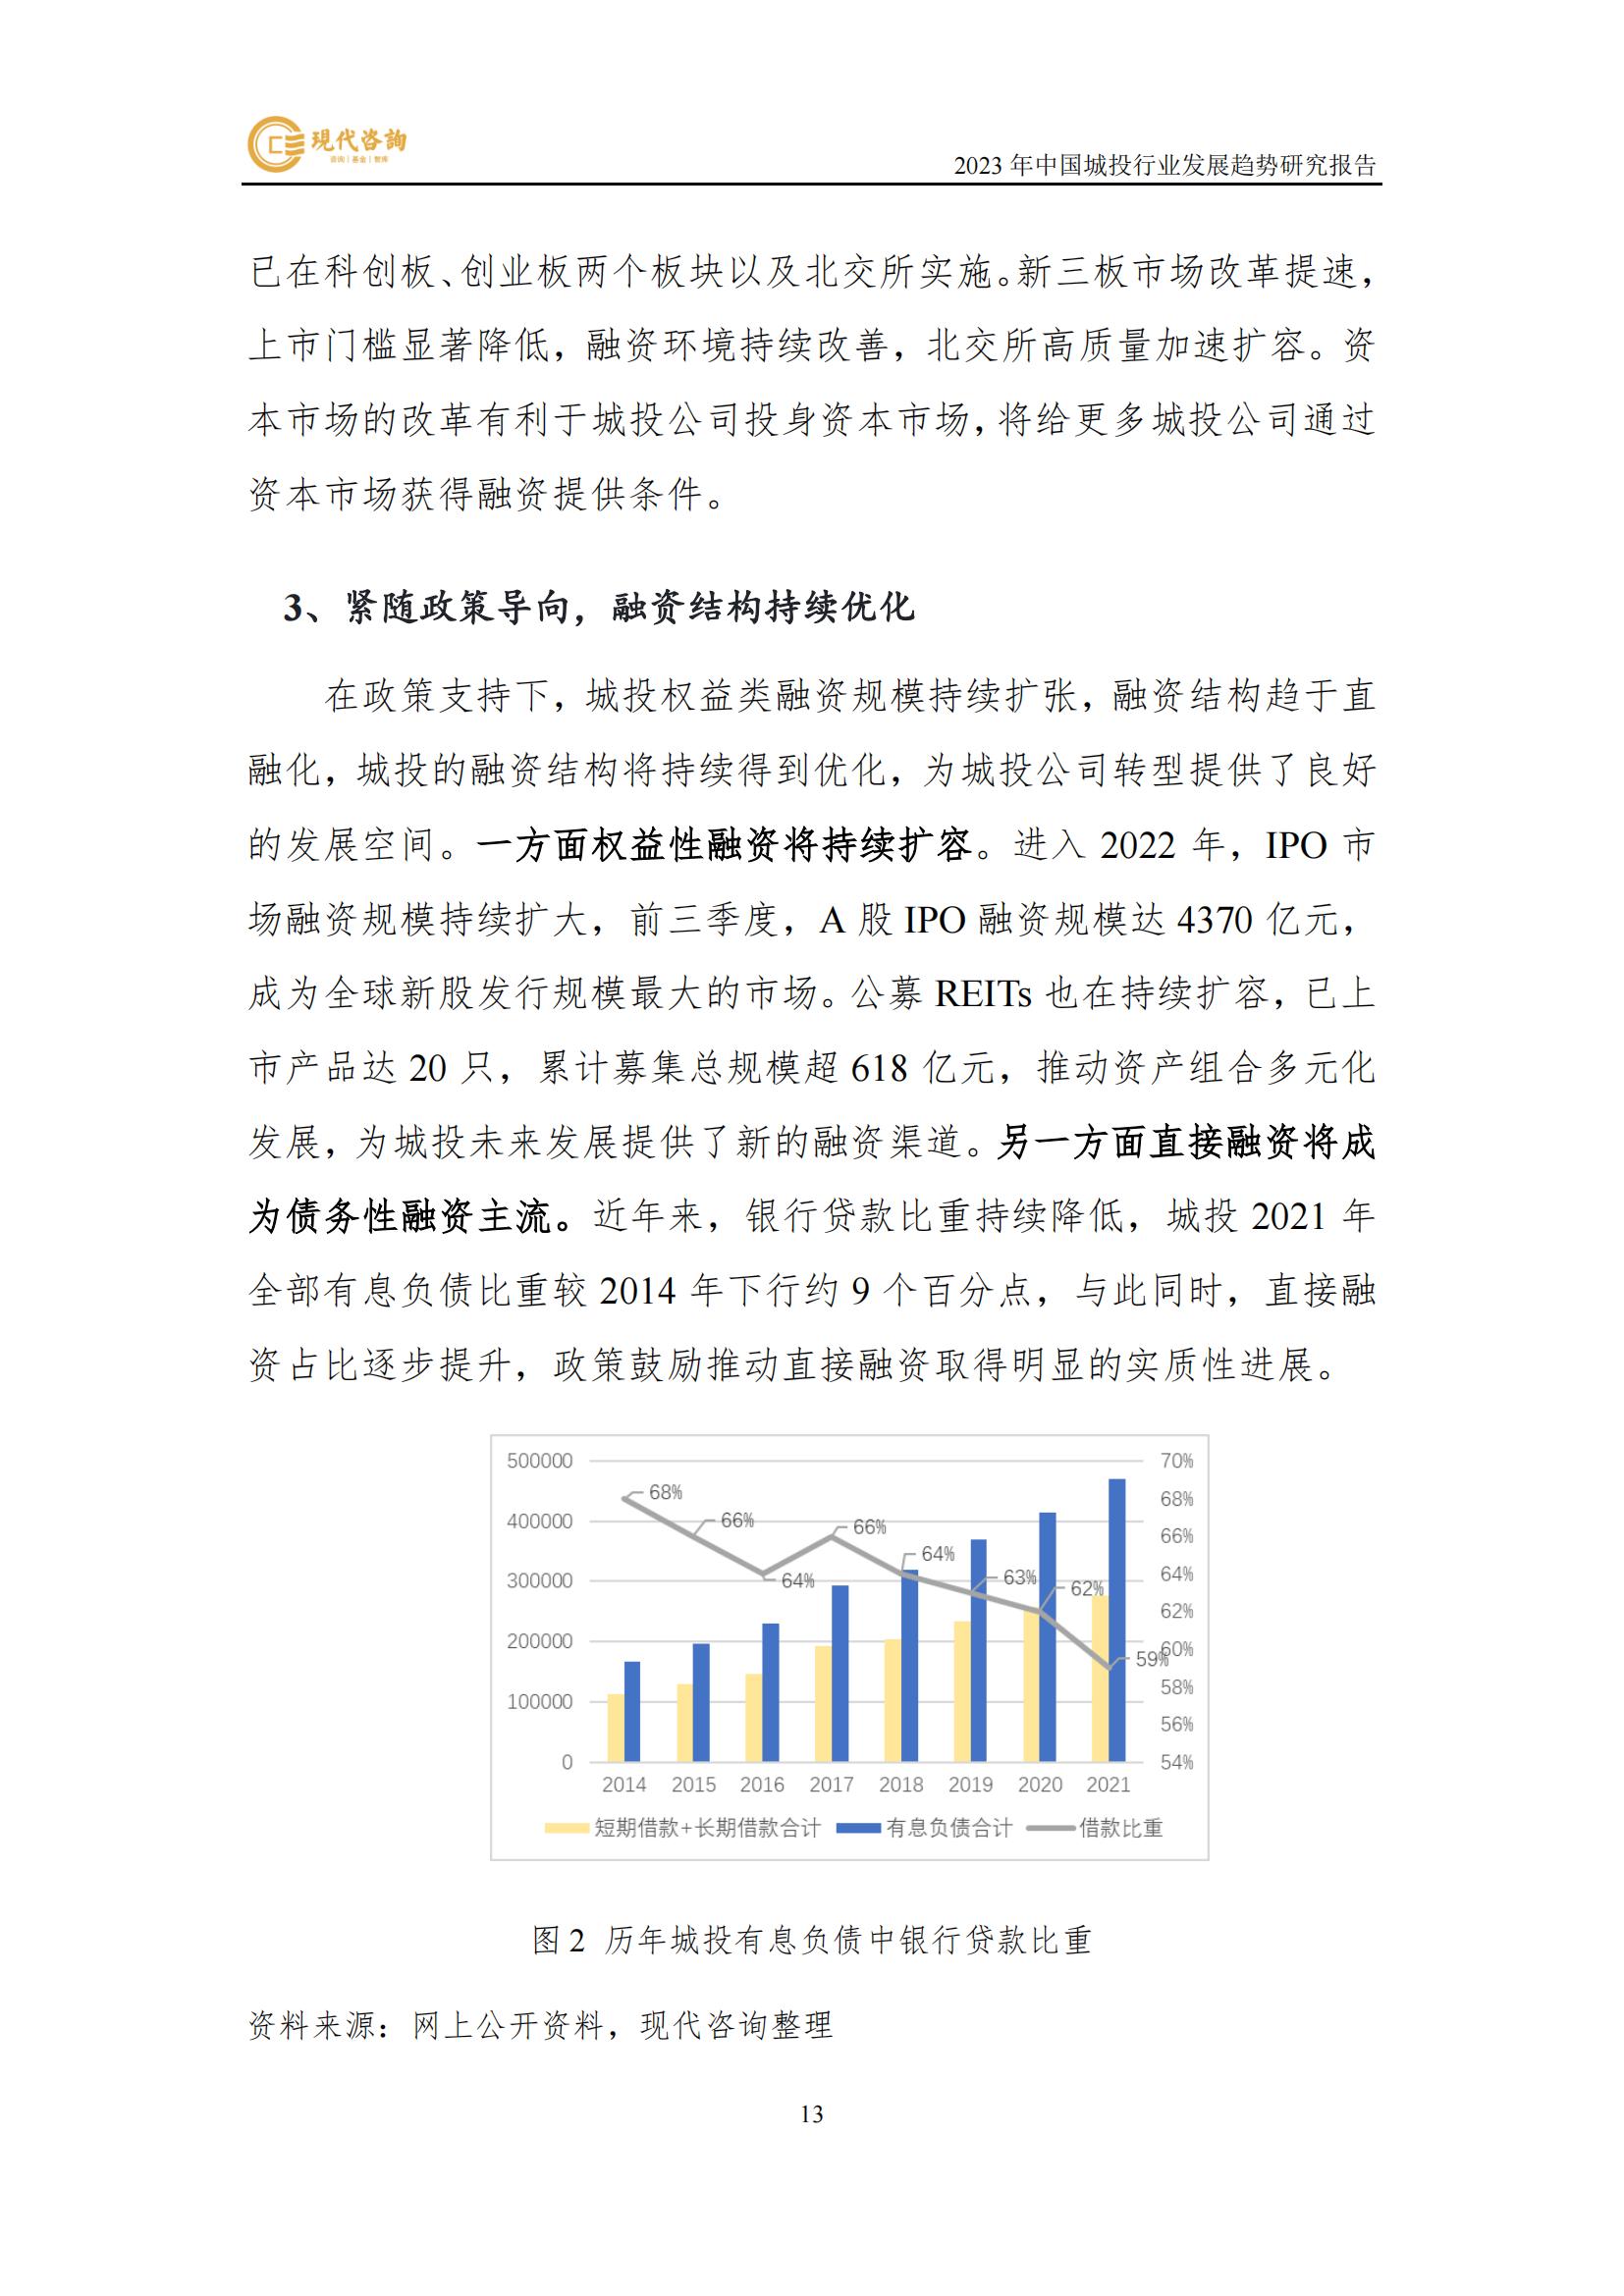 中国城投行业发展趋势研究报告（2023）(2)_19.jpg